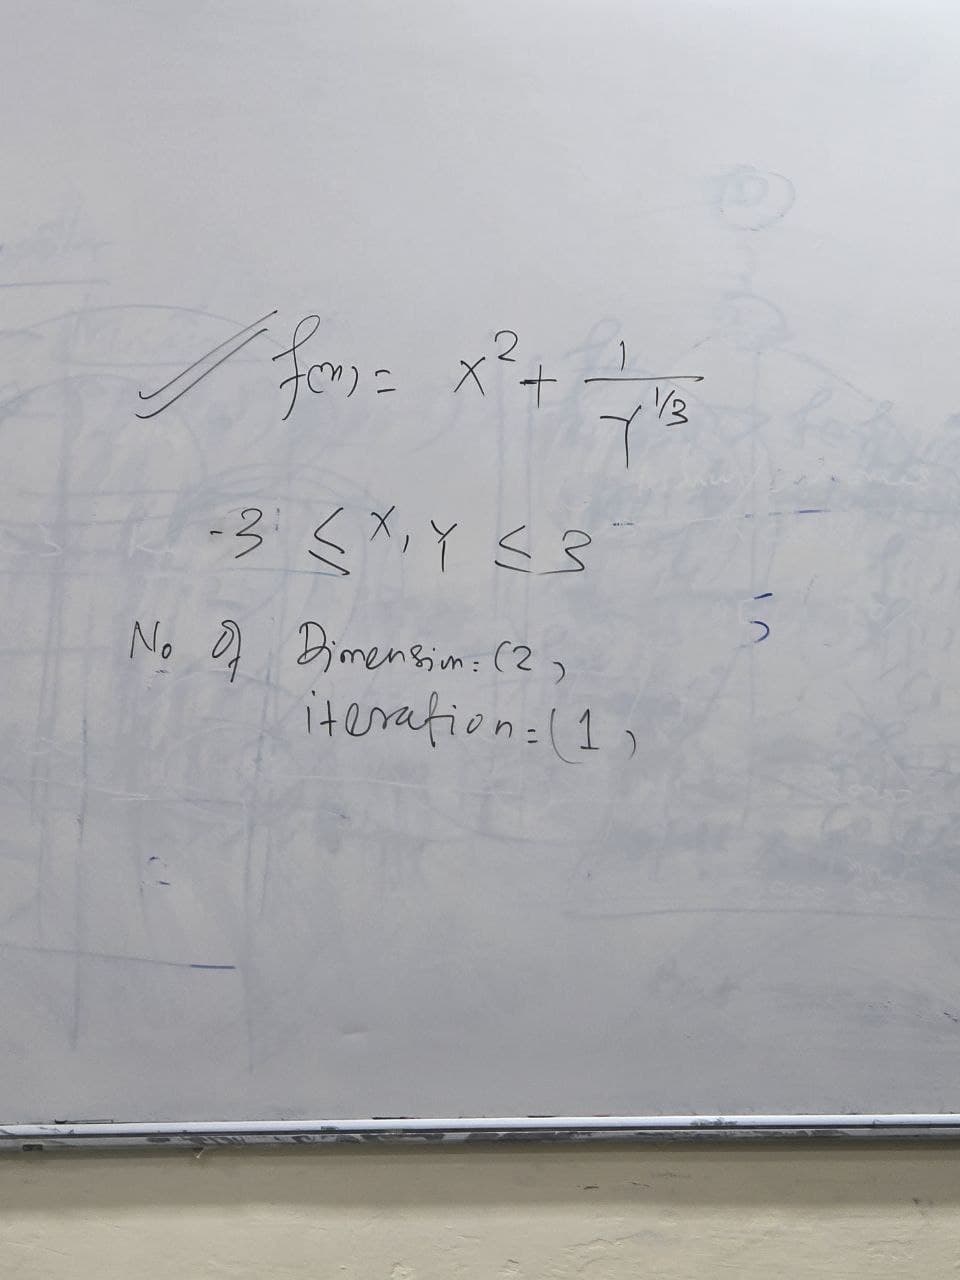 ✓f
X+
1/3
-3 (X,Y ≤3
No of Dimension: (2,
iteration:(1)